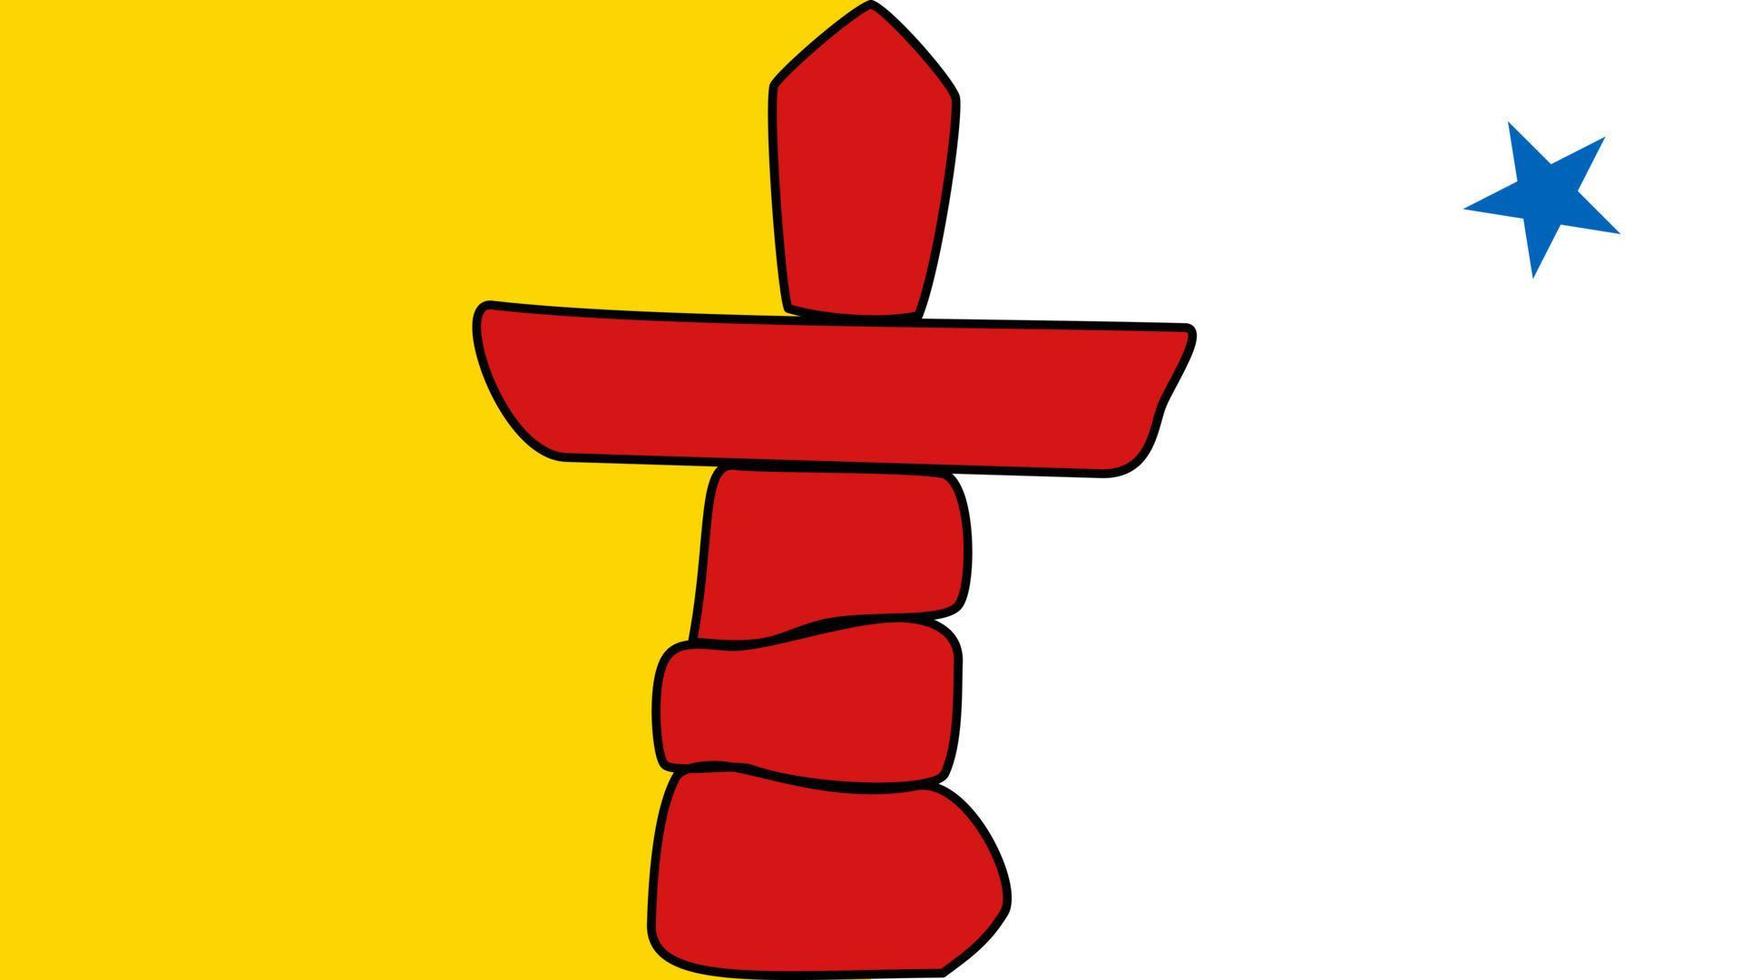 bandera de nunavut, provincia de canadá. ilustración vectorial vector